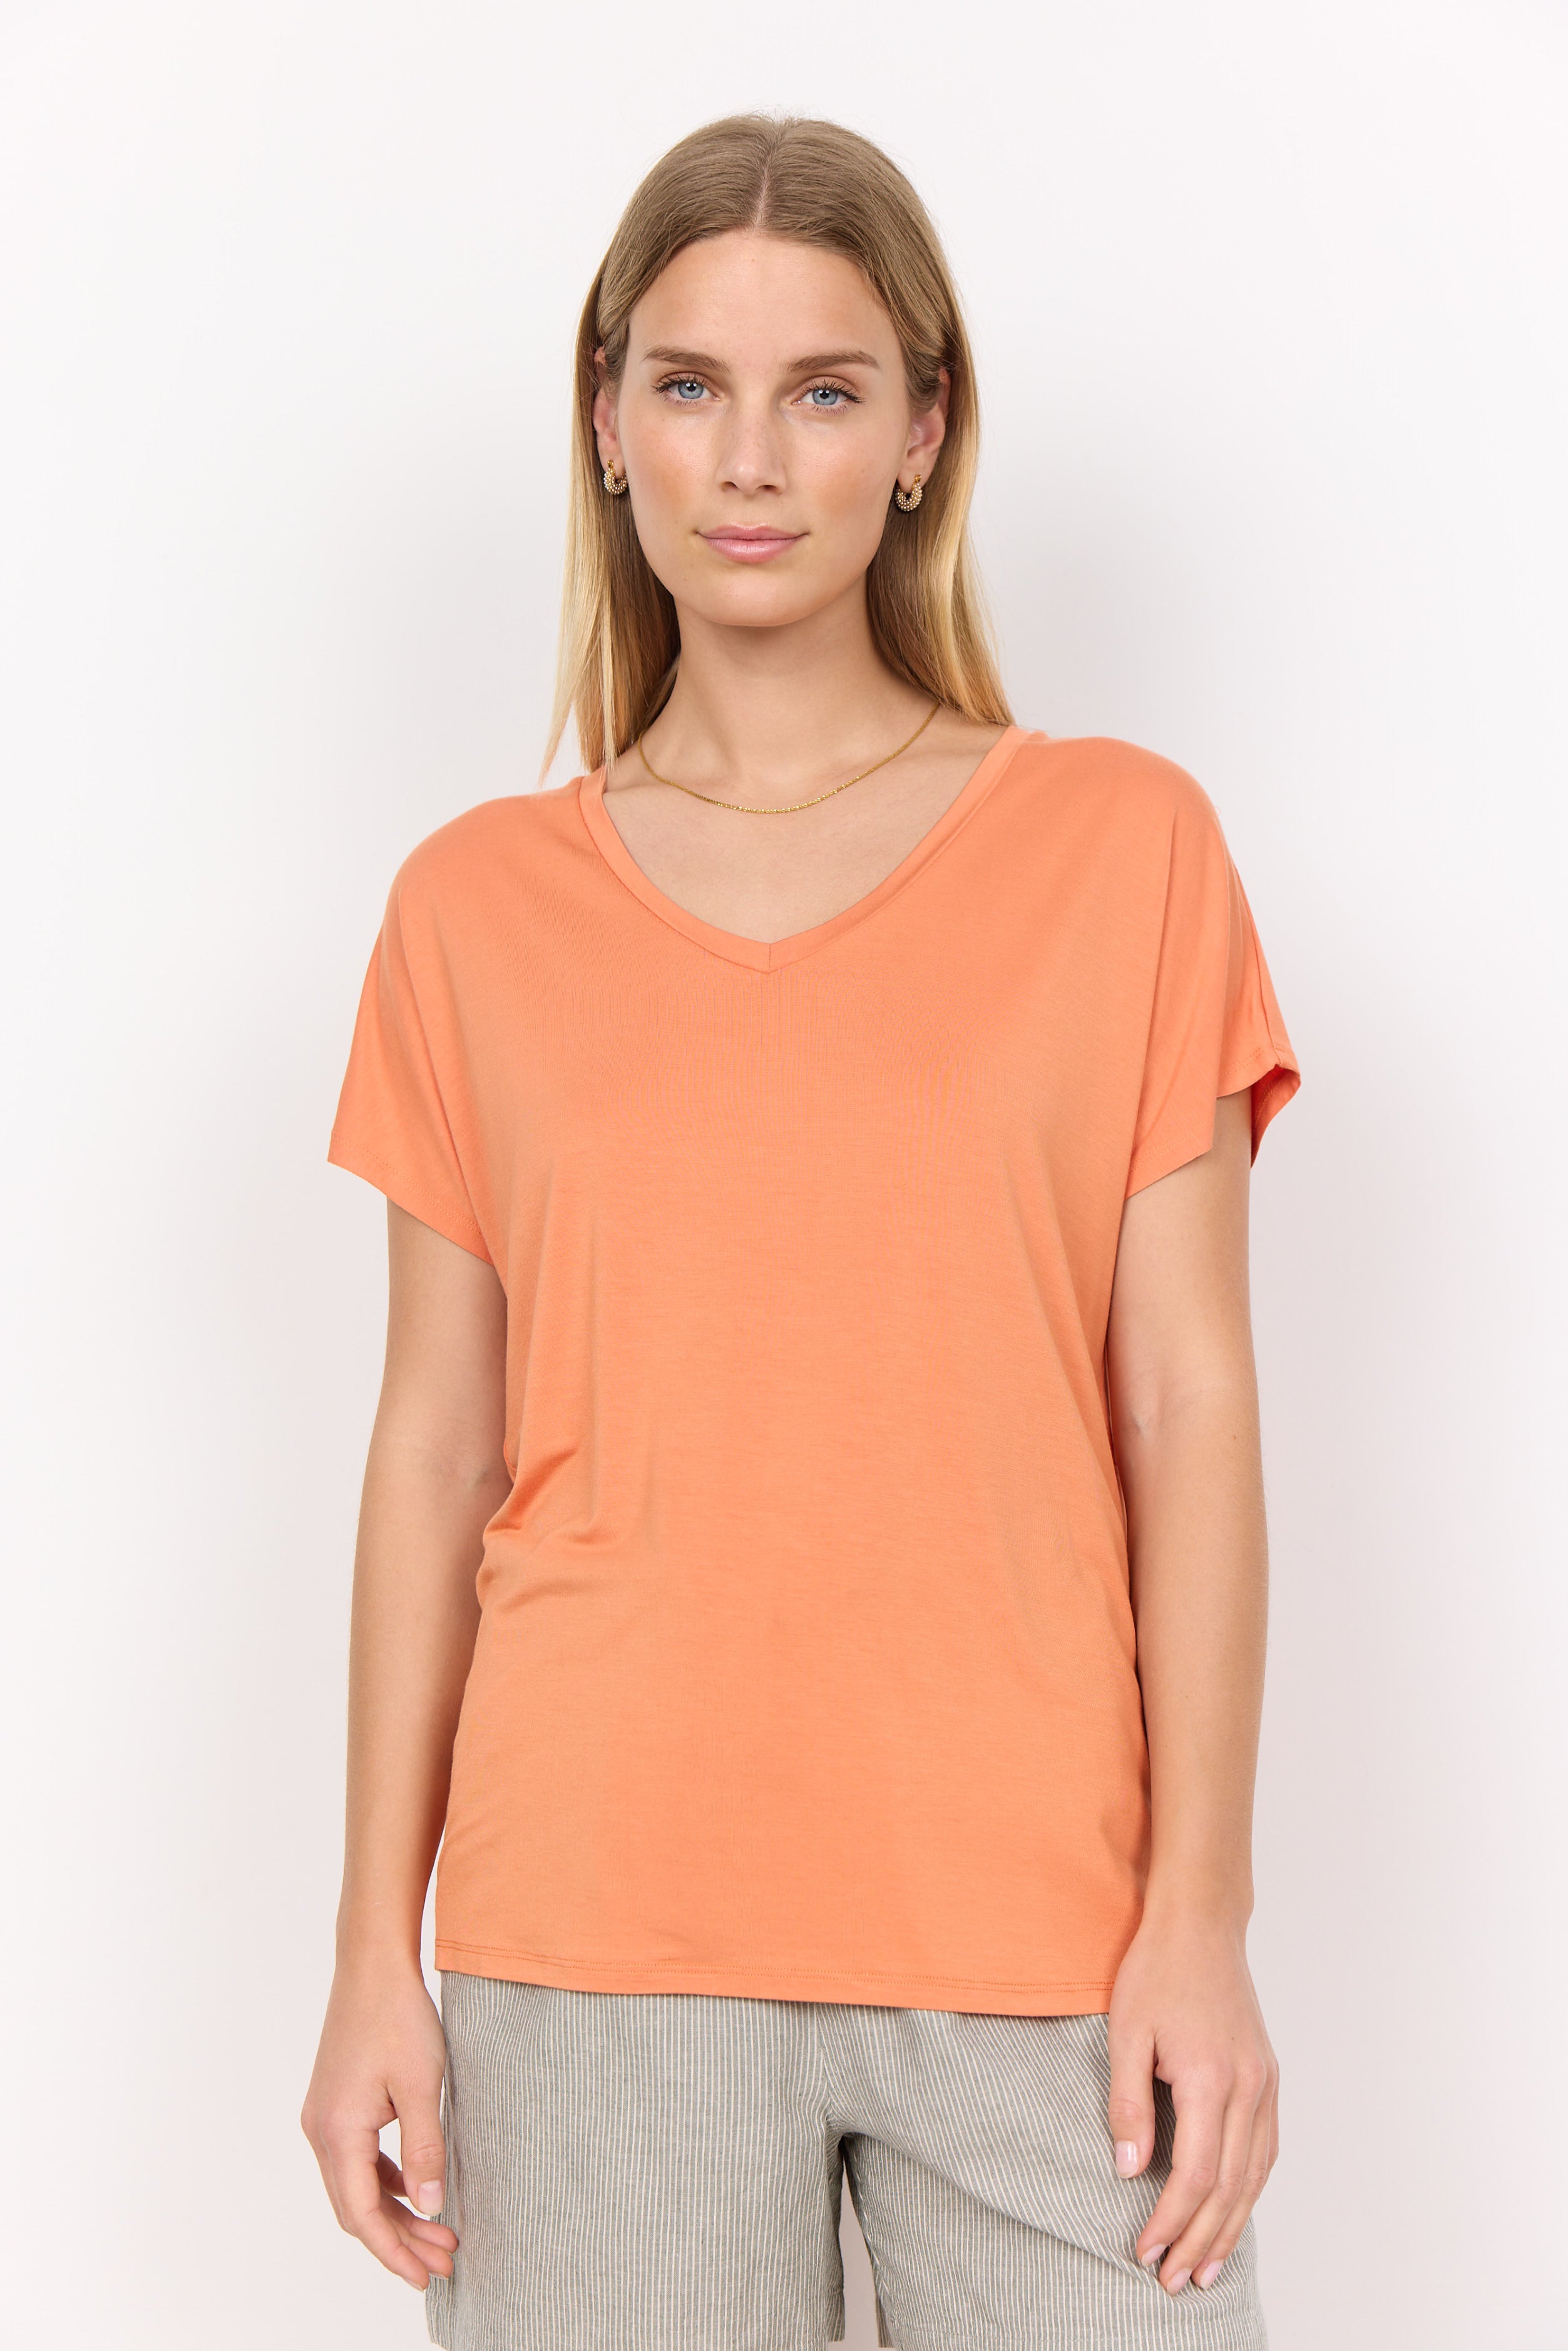 Marica T-Shirt in Peach